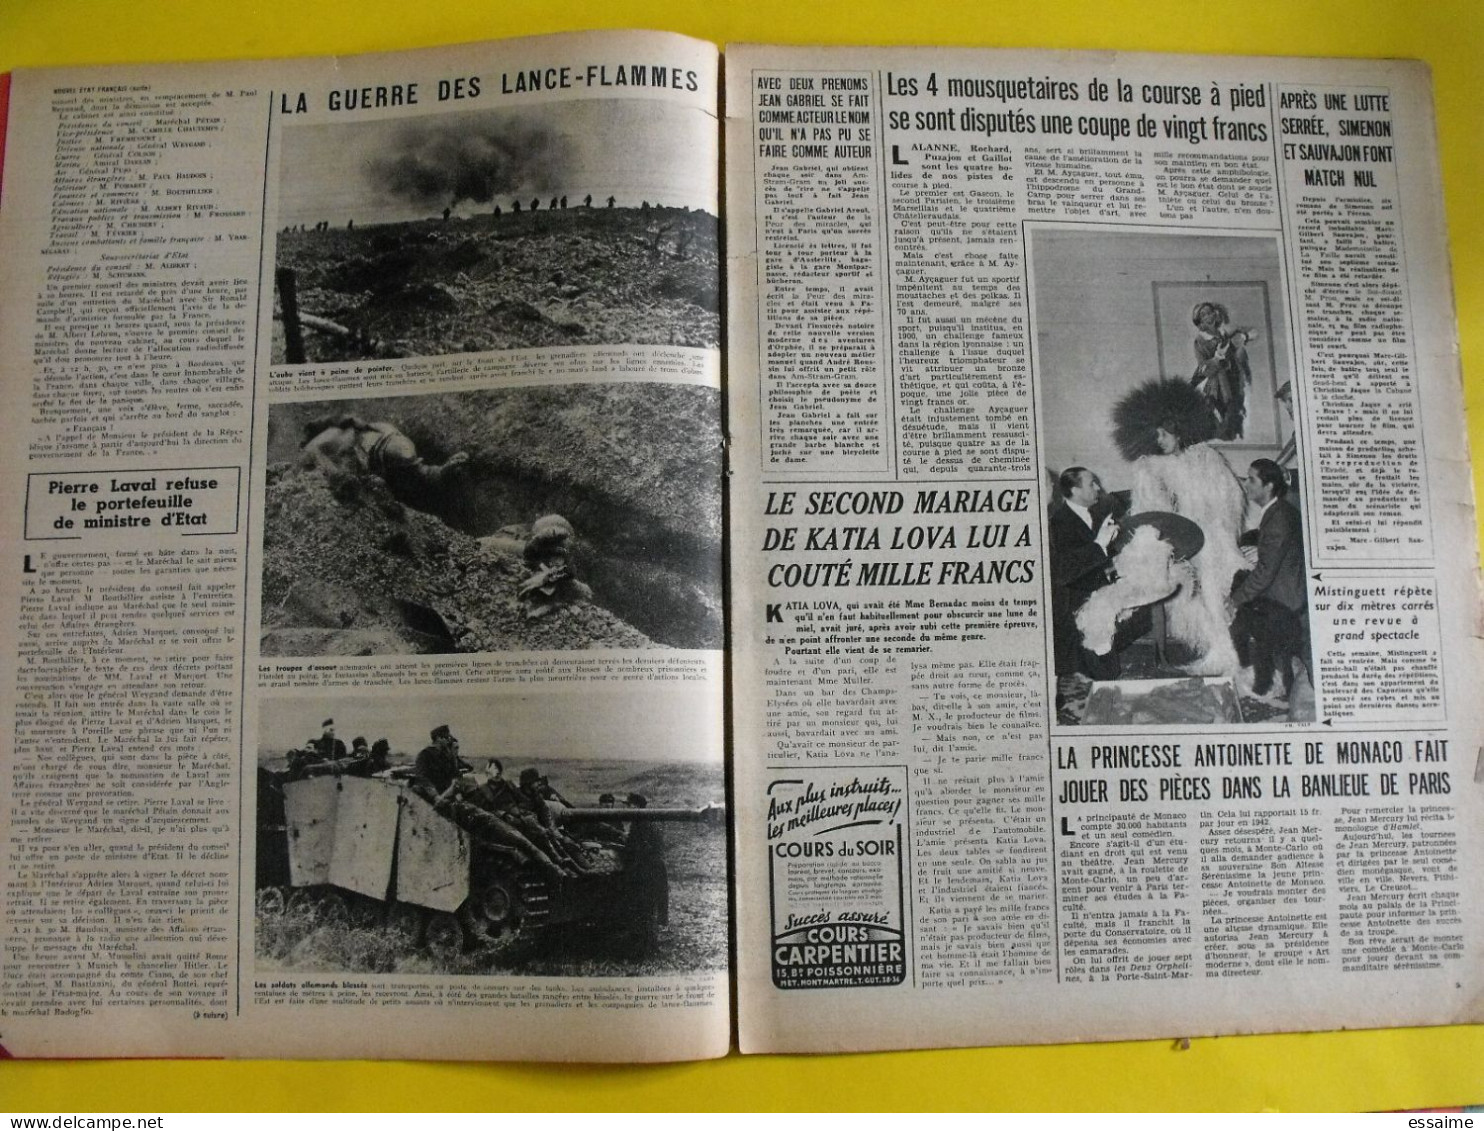 6 revues La semaine de 1943-44. actualités guerre photos collaboration japon thailande siam bamaw boxe raimu